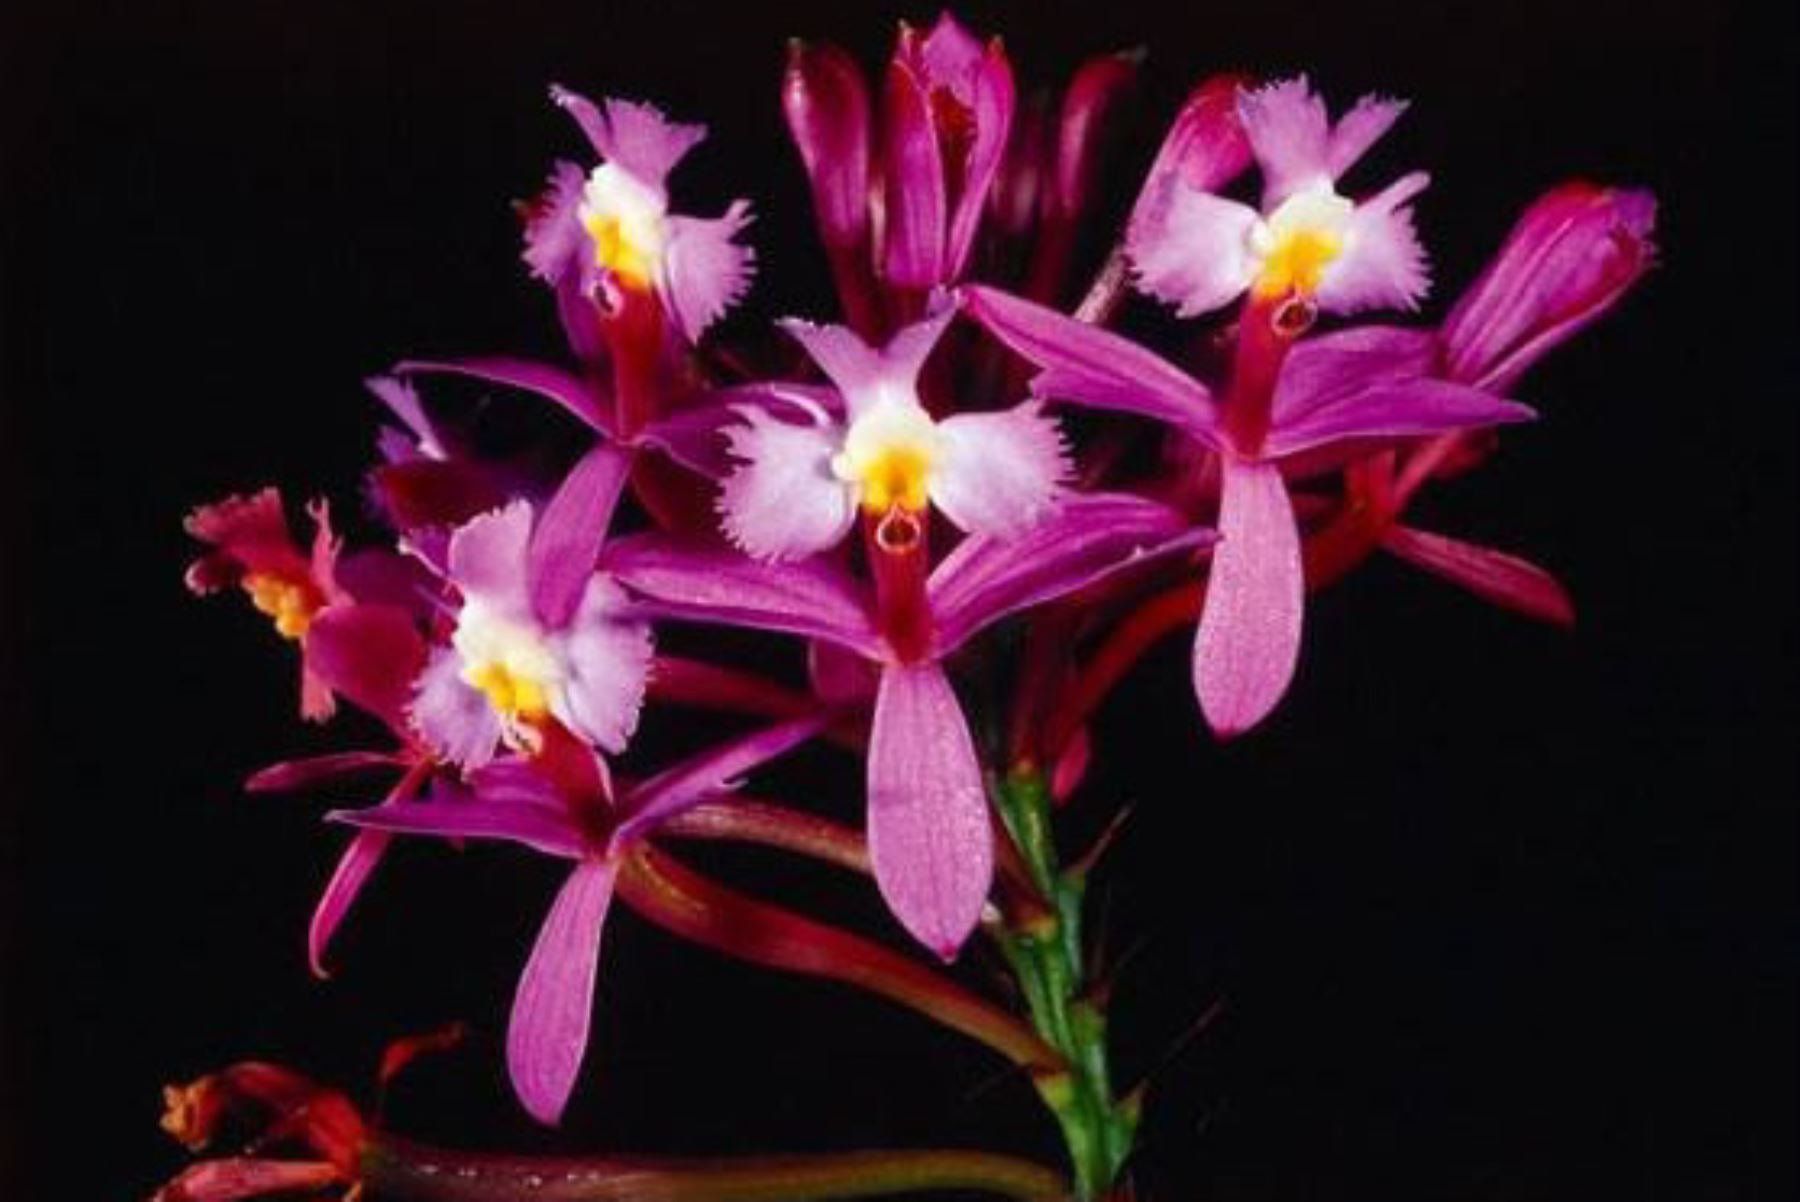 En el Perú hay más de 300 especies de orquídeas que se encuentran categorizadas como amenazadas, 62 están en peligro crítico, 19 en peligro y 220 vulnerables